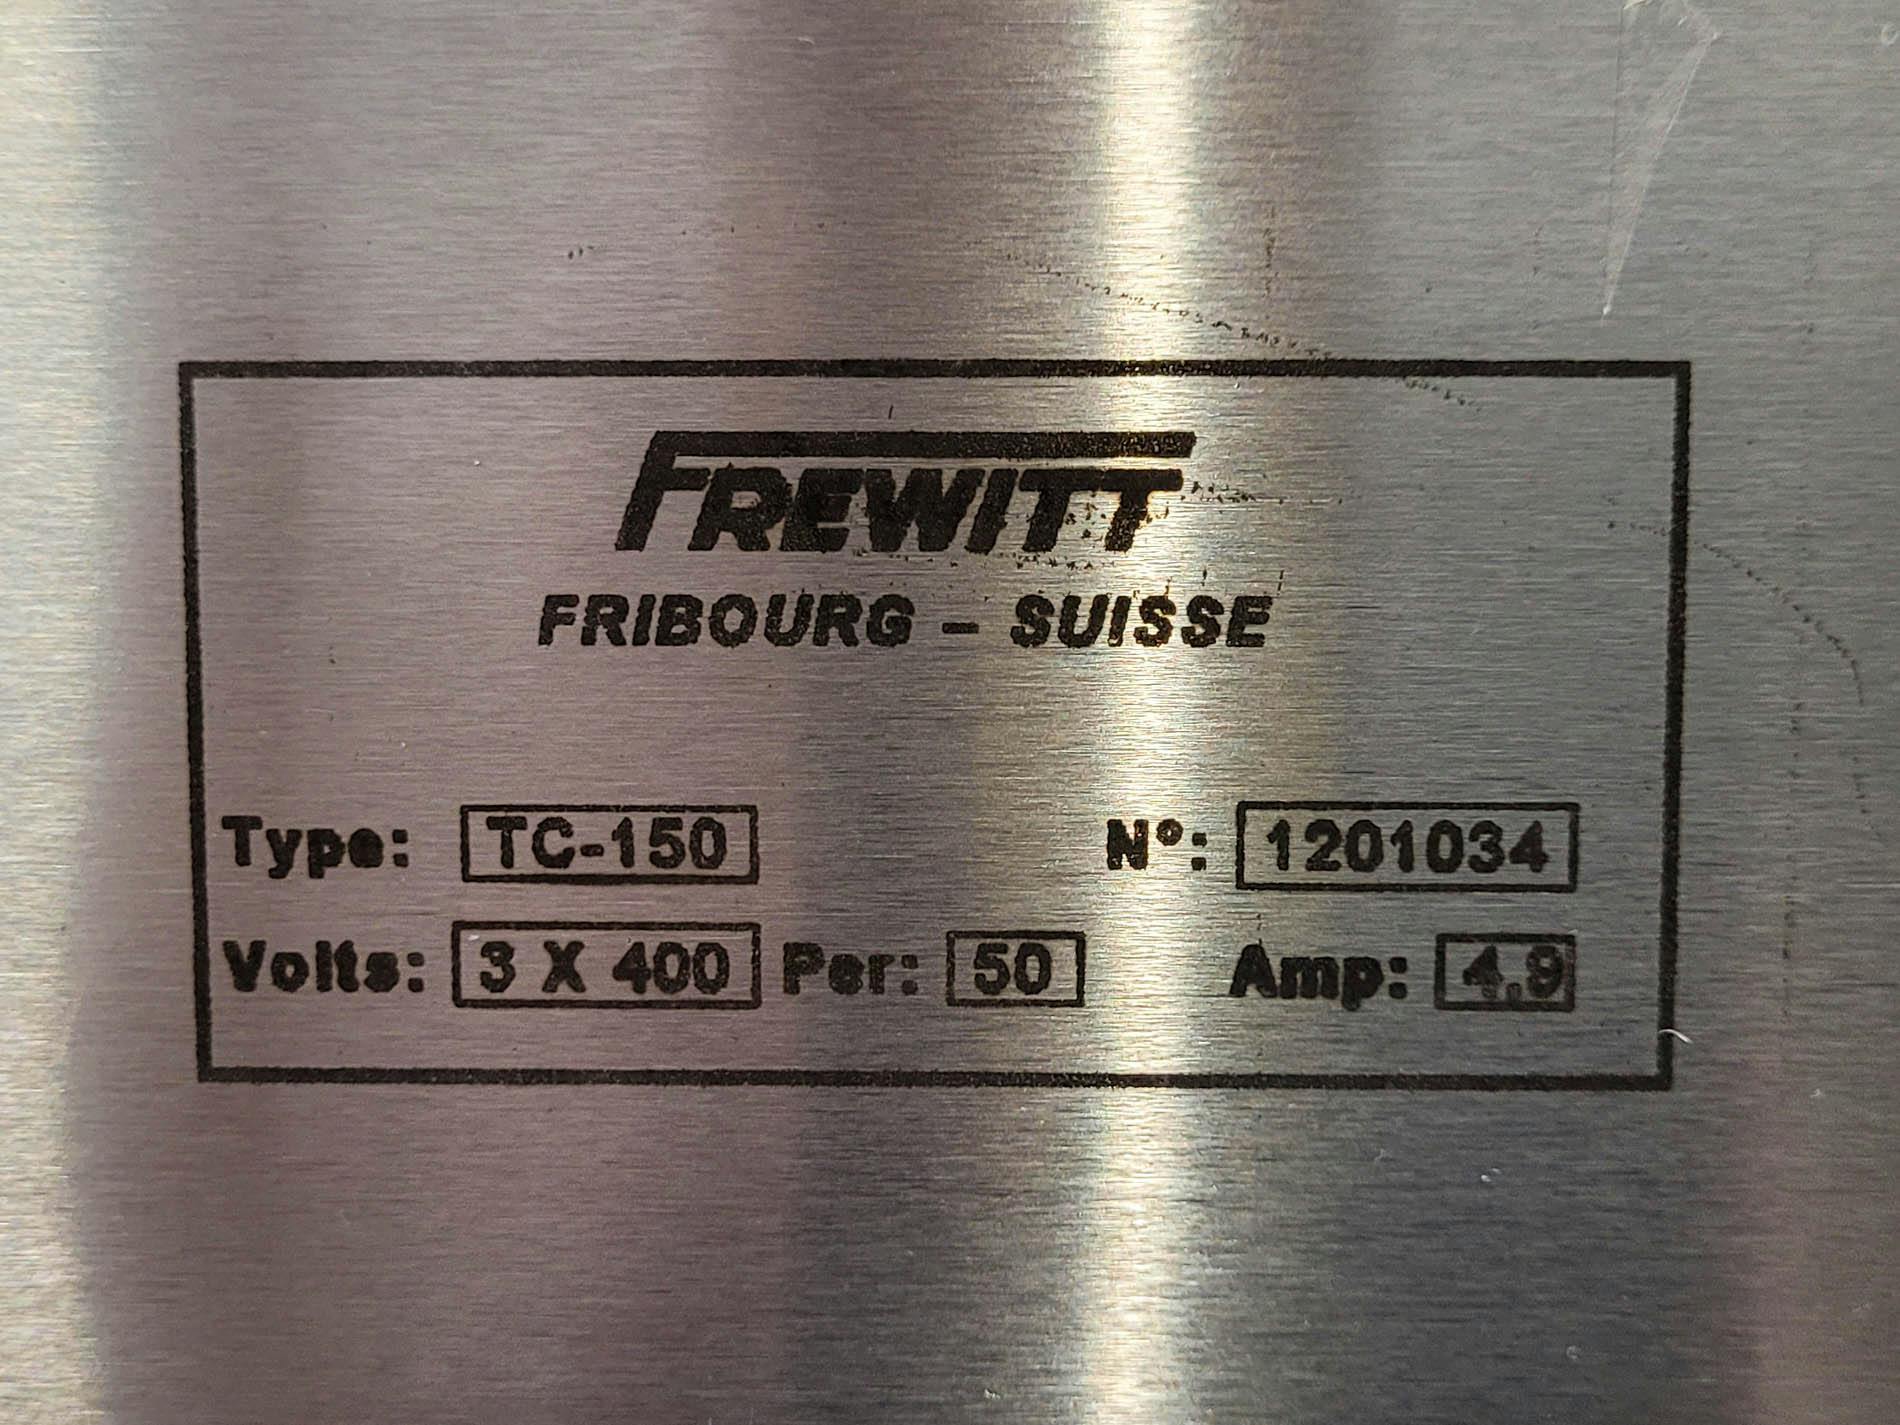 Frewitt Fribourg TC-150 - Doorwrijfzeef - image 15